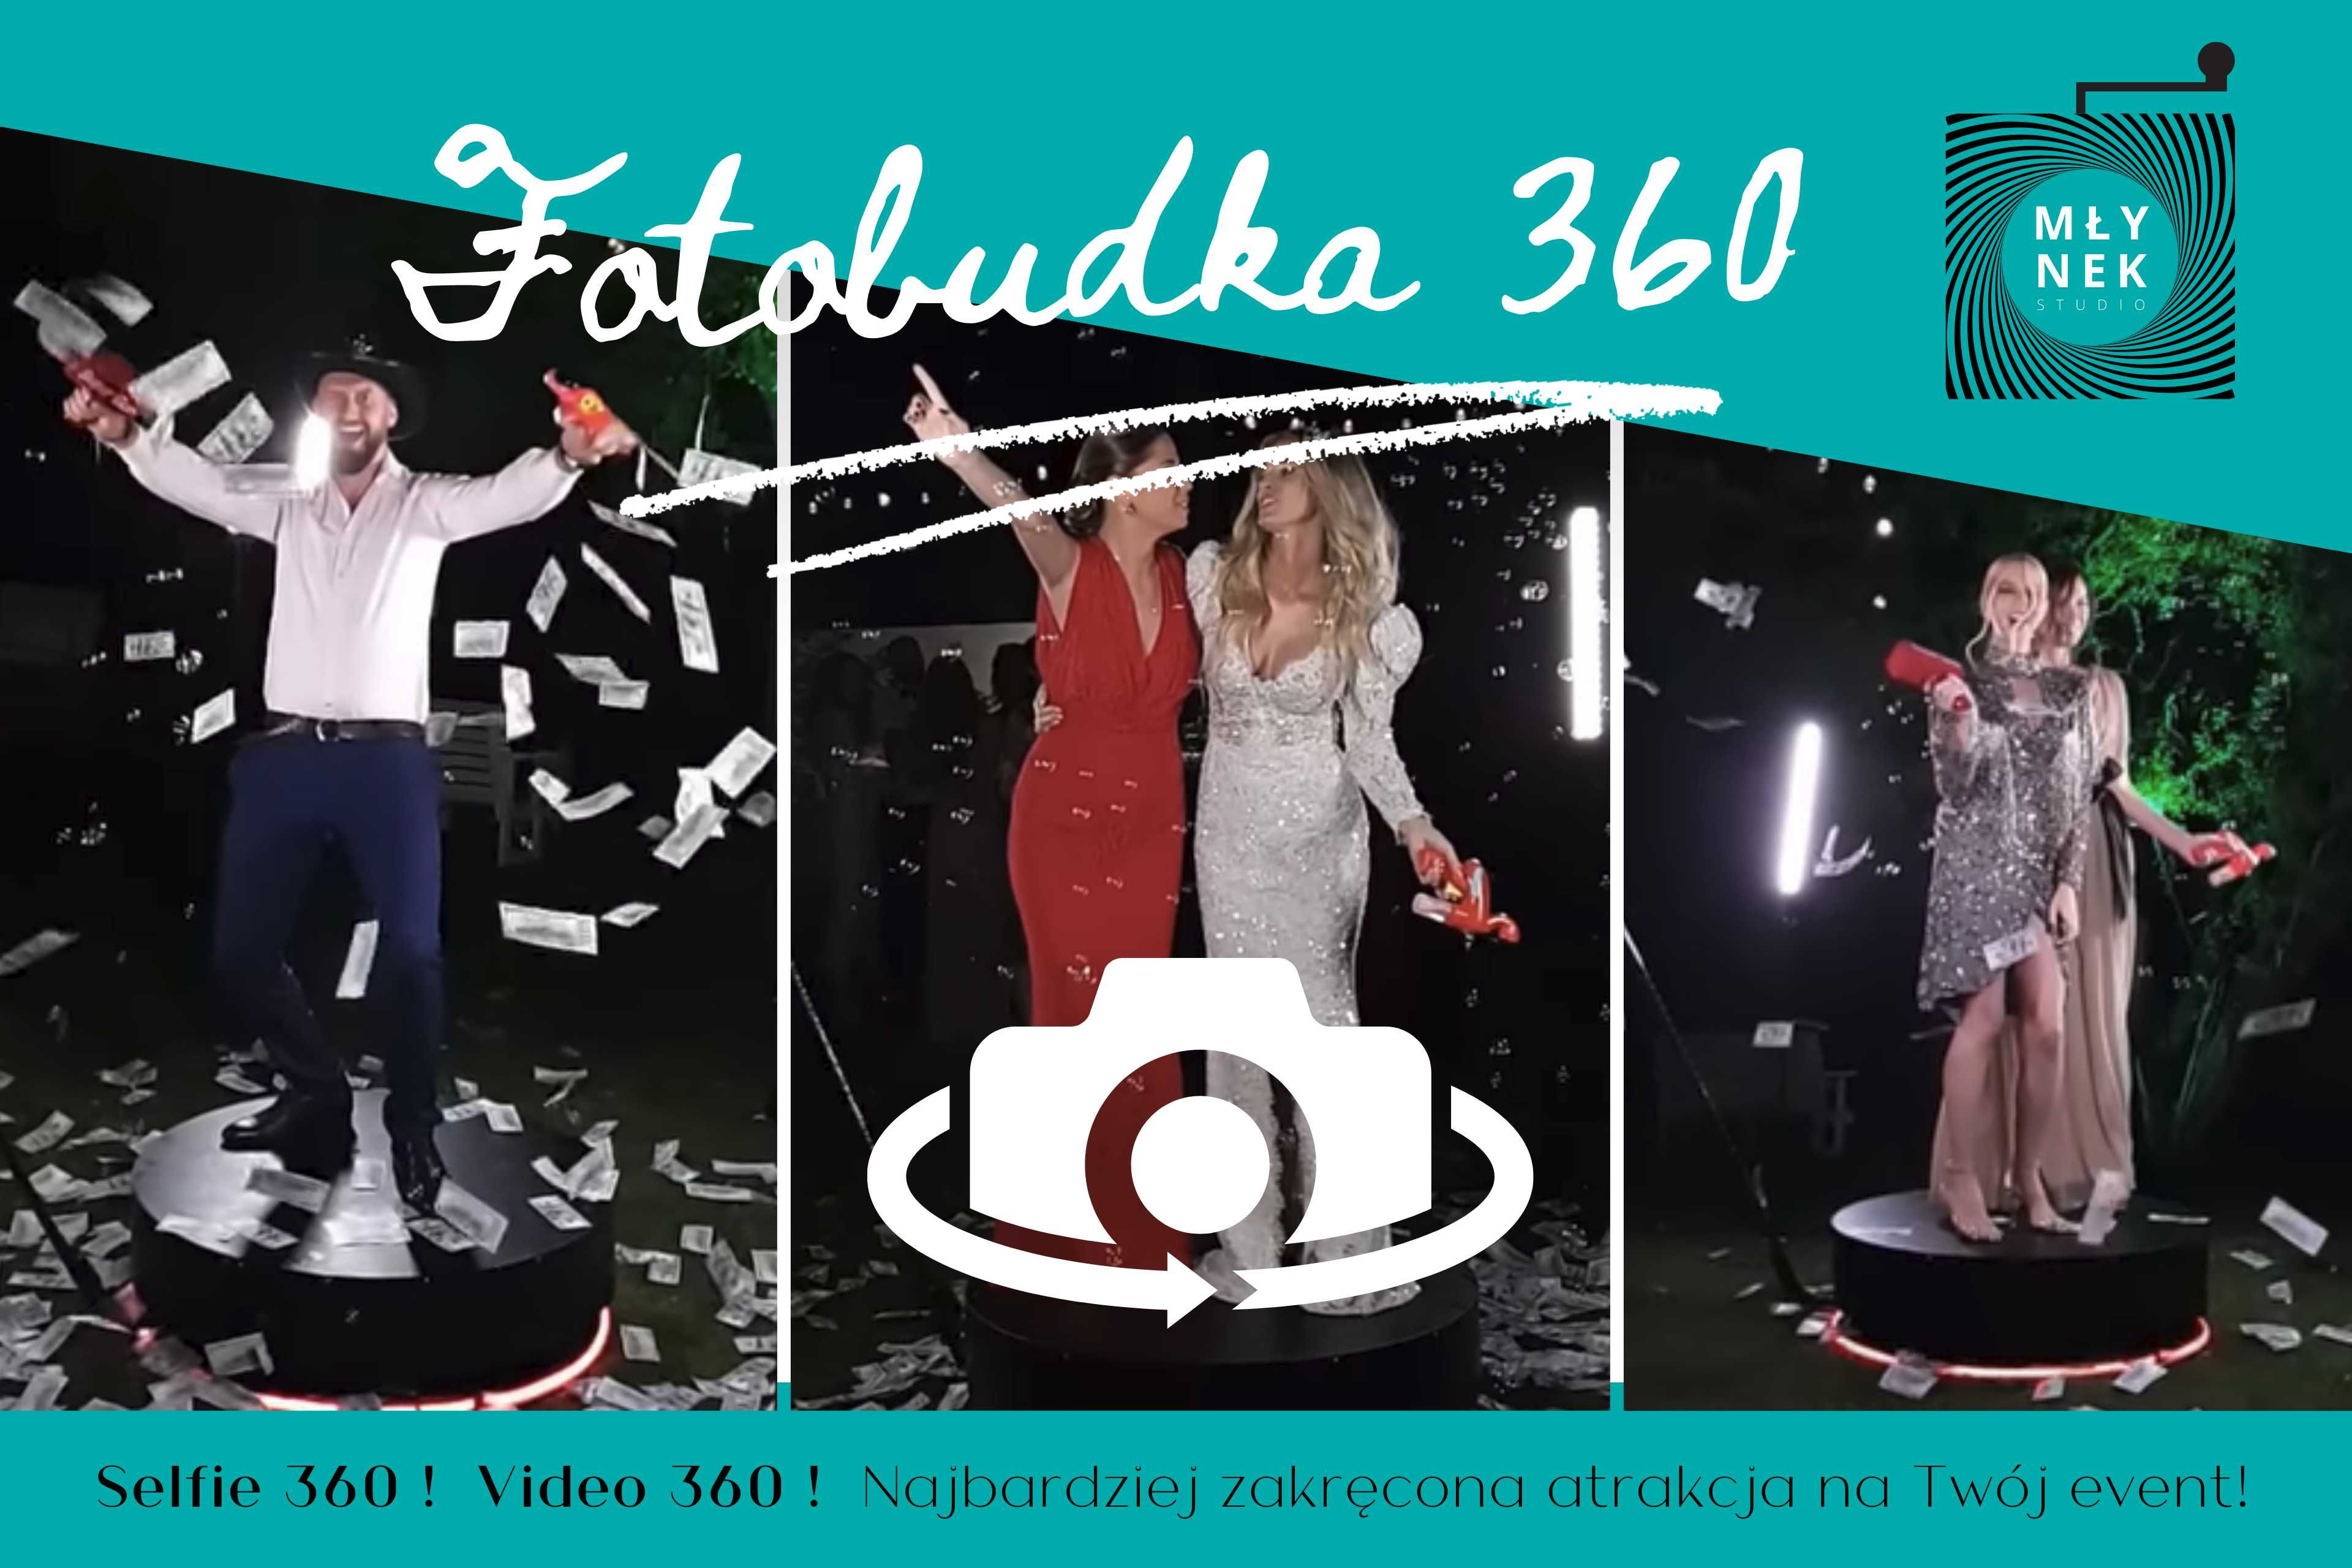 Atrakcje na eventy Fotobudka 360, refleksomierz, dart, piłkarzyki, PS5